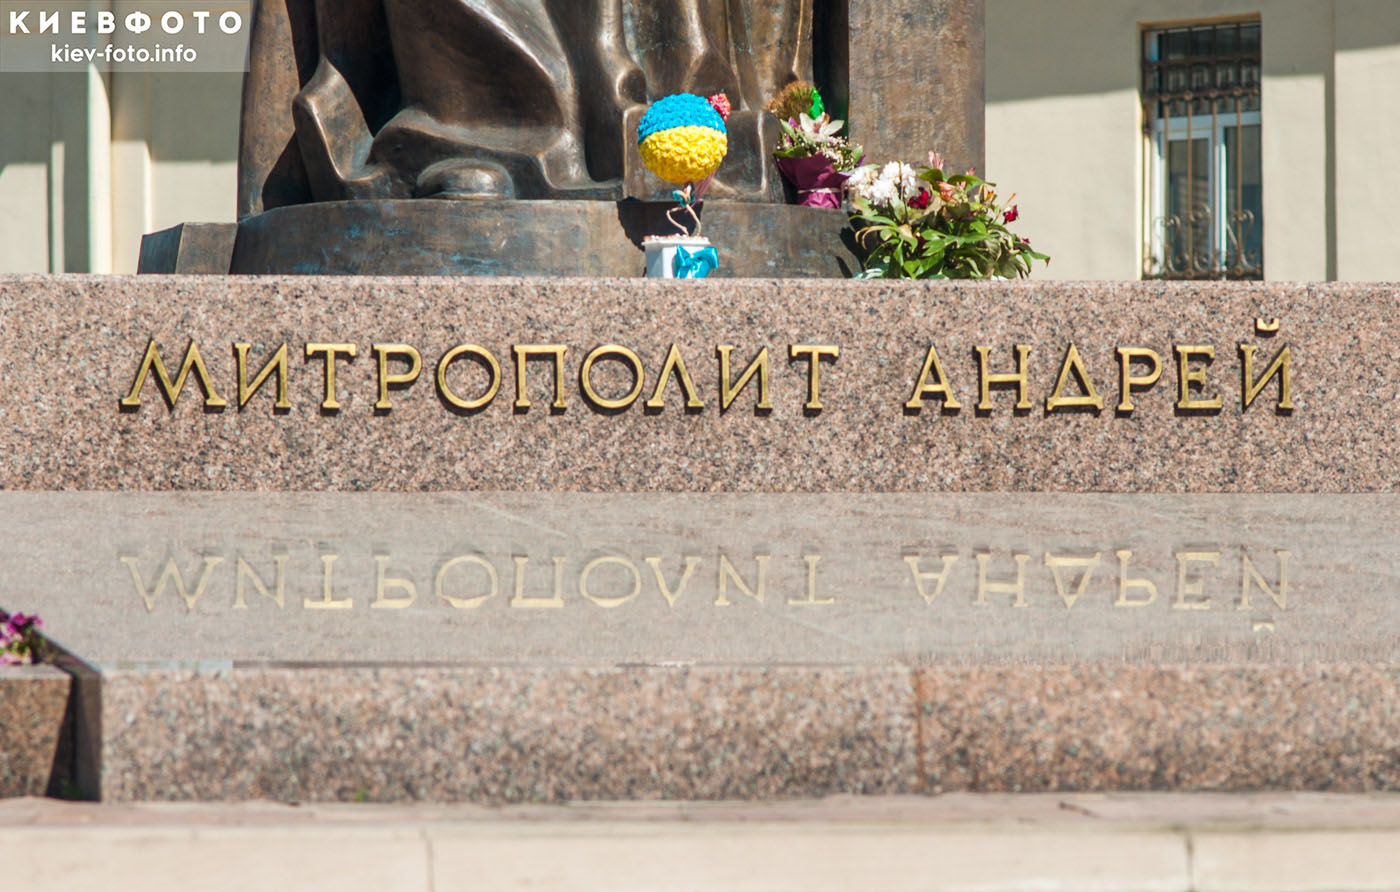 Памятник митрополиту Андрею Шептицкому во Львове